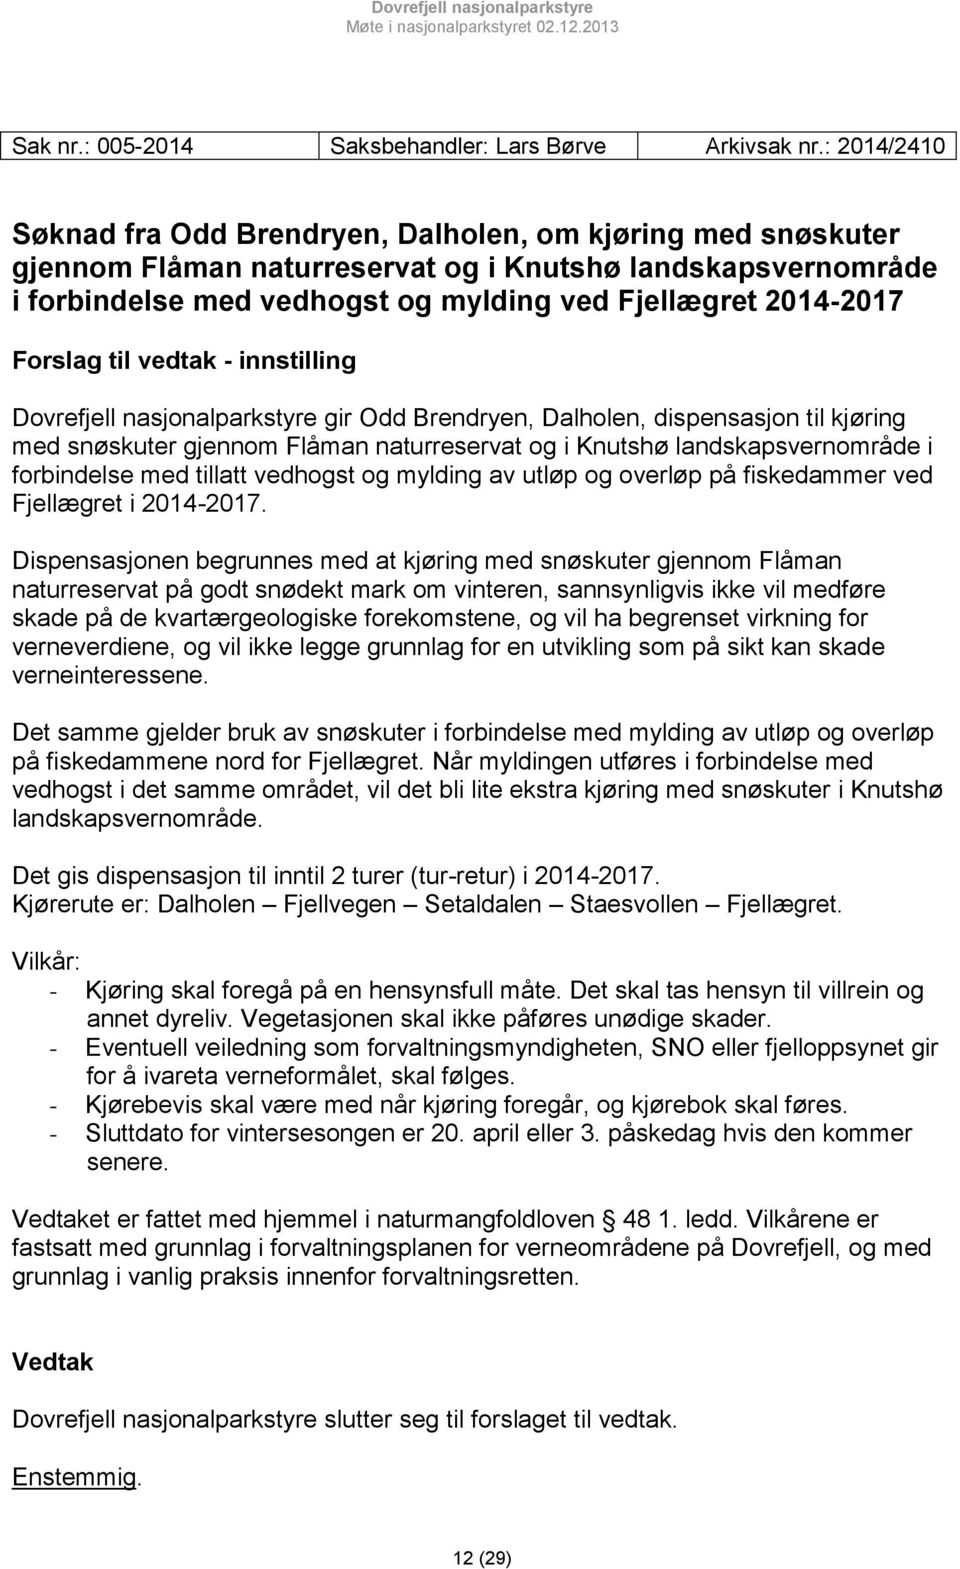 Forslag til vedtak - innstilling Dovrefjell nasjonalparkstyre gir Odd Brendryen, Dalholen, dispensasjon til kjøring med snøskuter gjennom Flåman naturreservat og i Knutshø landskapsvernområde i